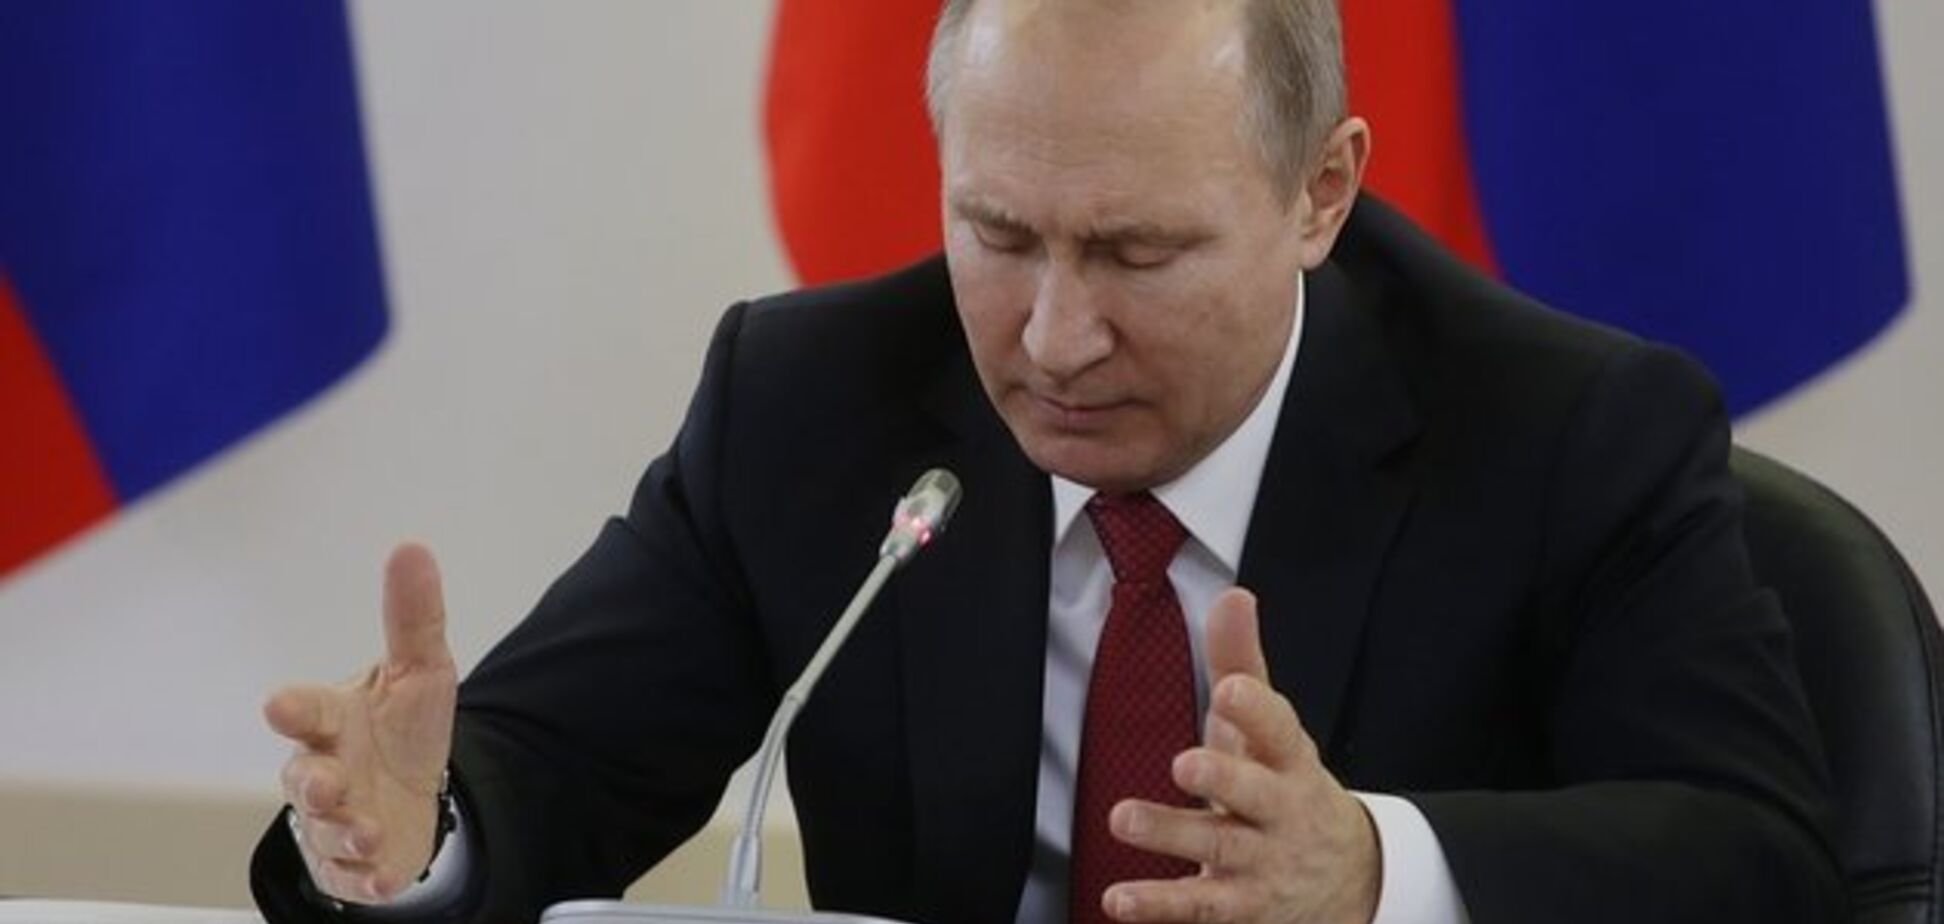 Не только Украина: Путин начал подготовку к захвату новых территорий